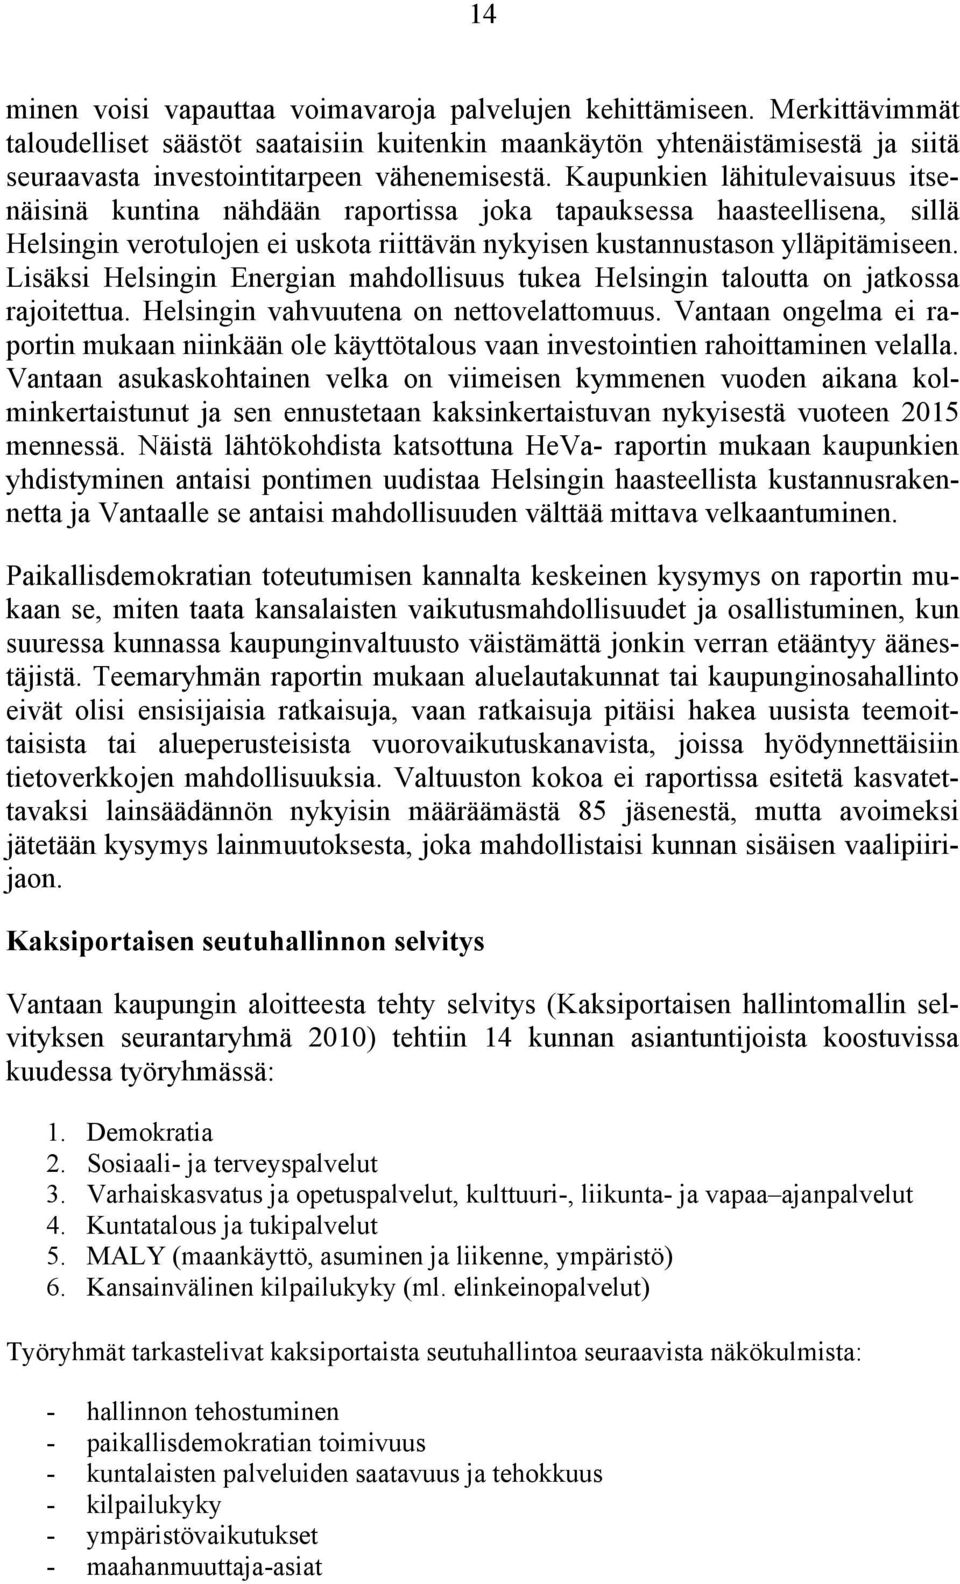 Kaupunkien lähitulevaisuus itsenäisinä kuntina nähdään raportissa joka tapauksessa haasteellisena, sillä Helsingin verotulojen ei uskota riittävän nykyisen kustannustason ylläpitämiseen.